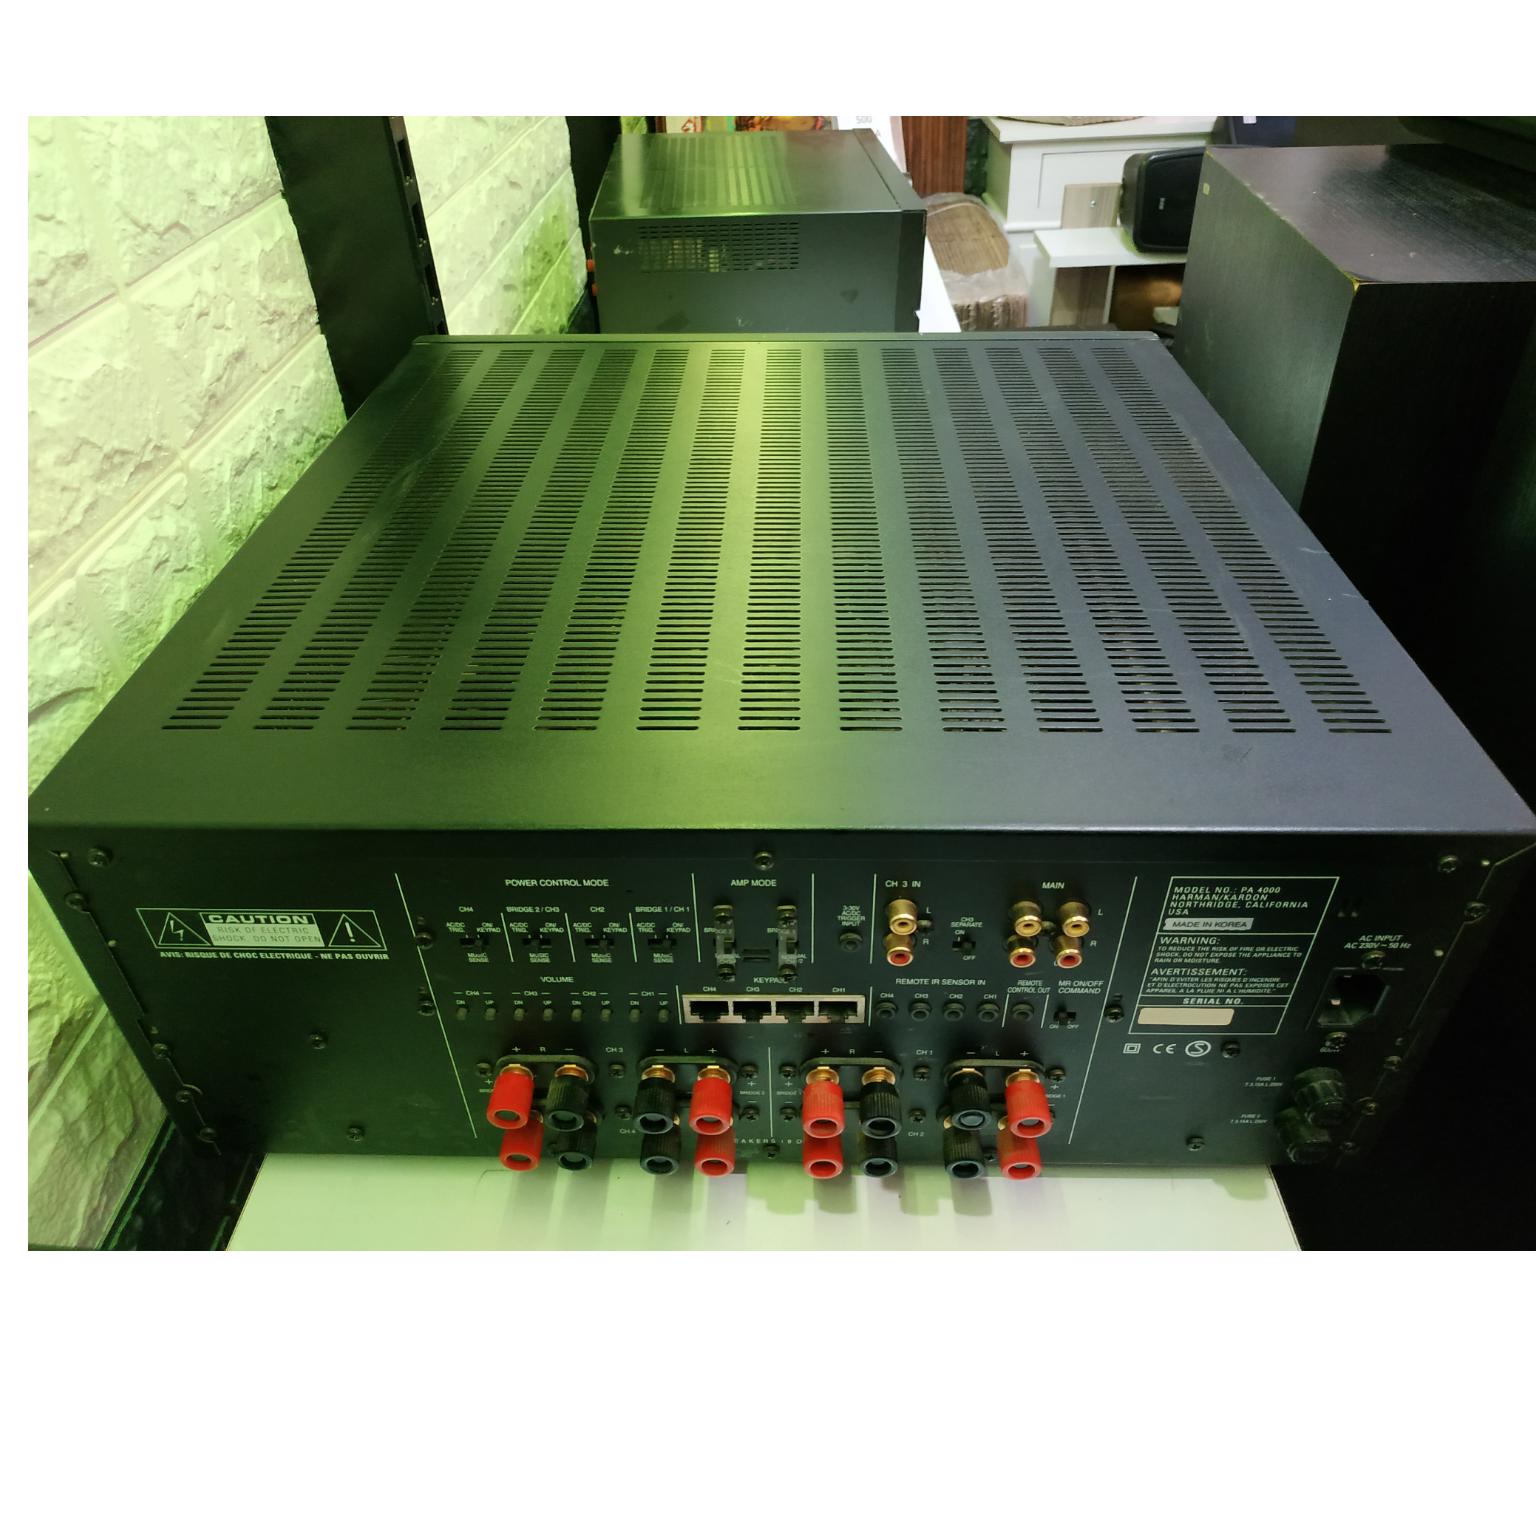 Harman kardon pa4000 bridgeable multichannel amplifier